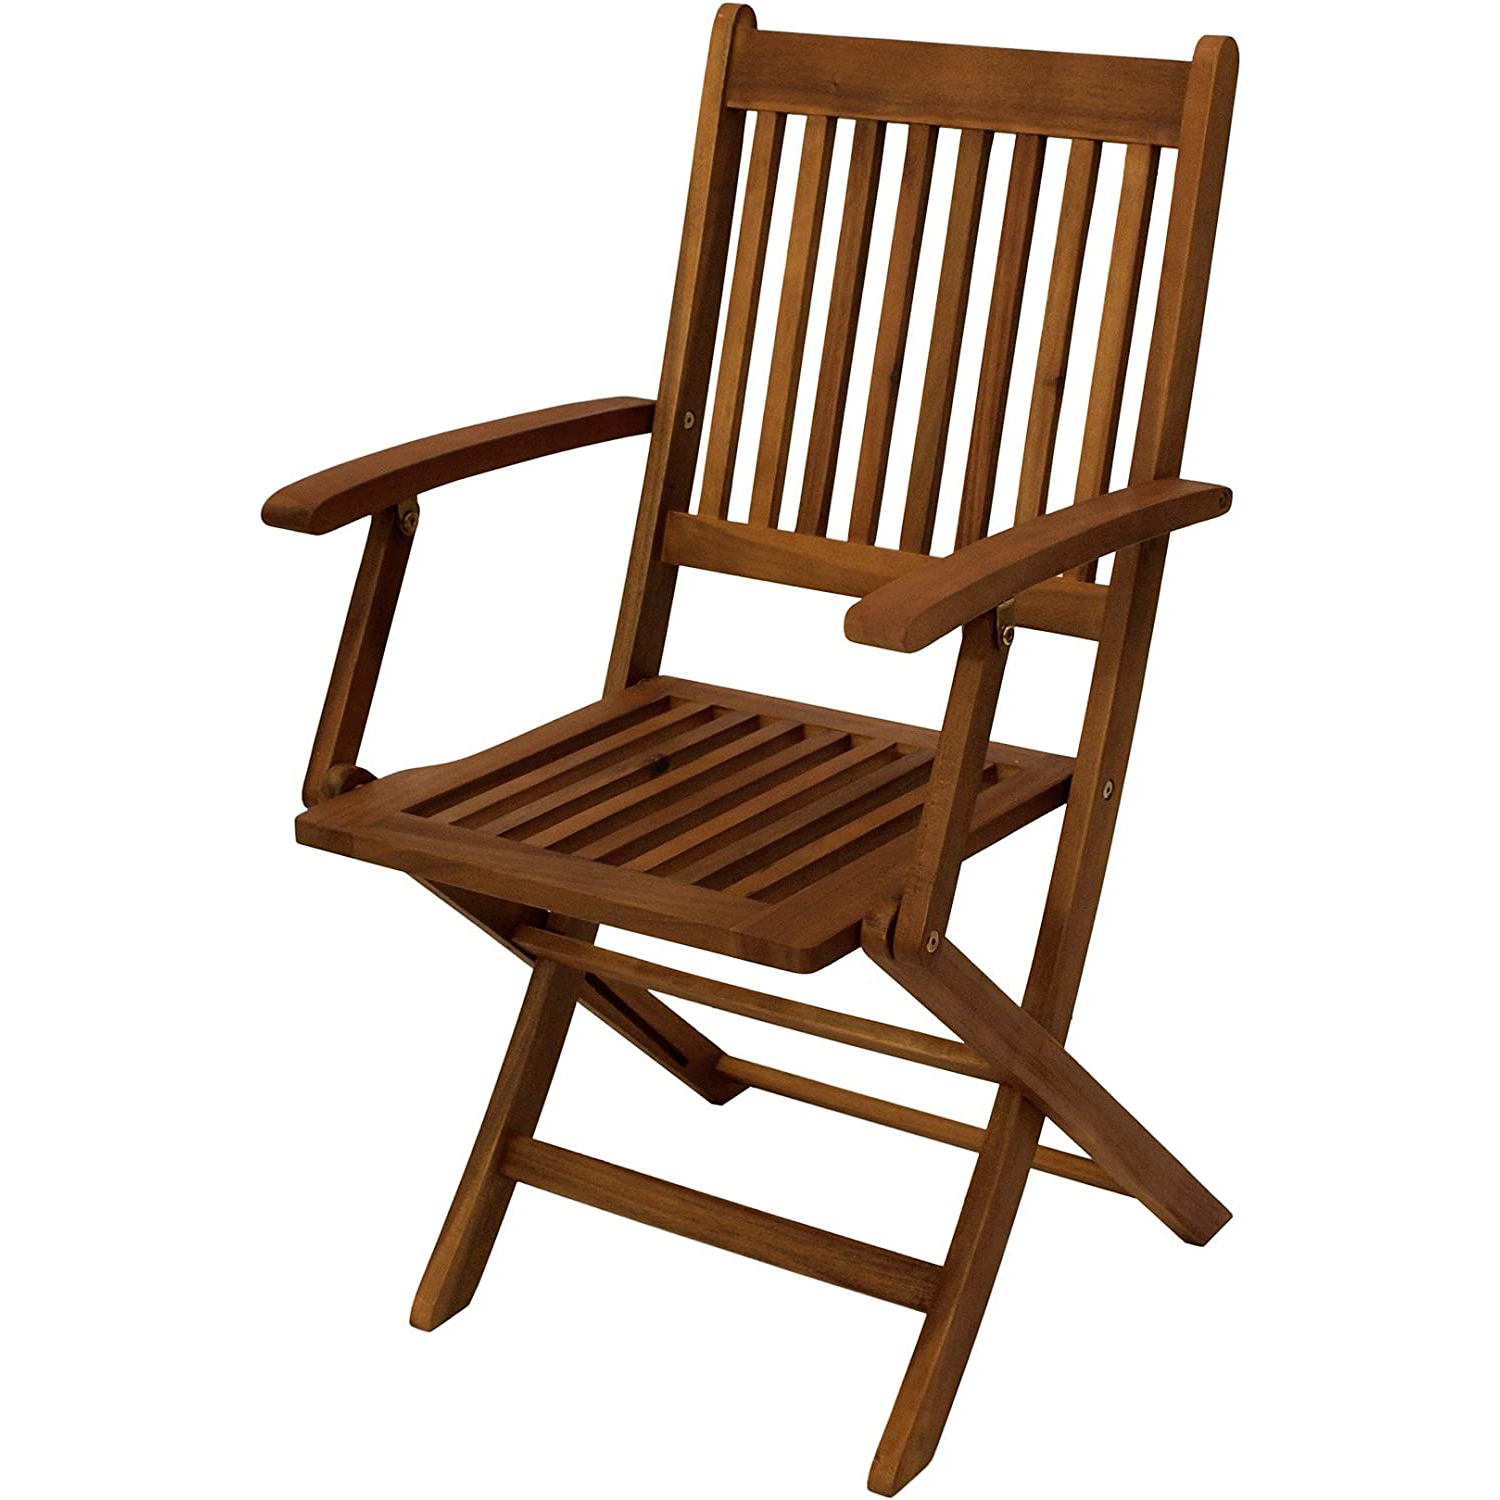 Стулья дачные складные. Стул деревянный со спинкой. Складной стул со спинкой из дерева. Стулья раскладные из дерева коричневые. Стул складной деревянный со спинкой купить.